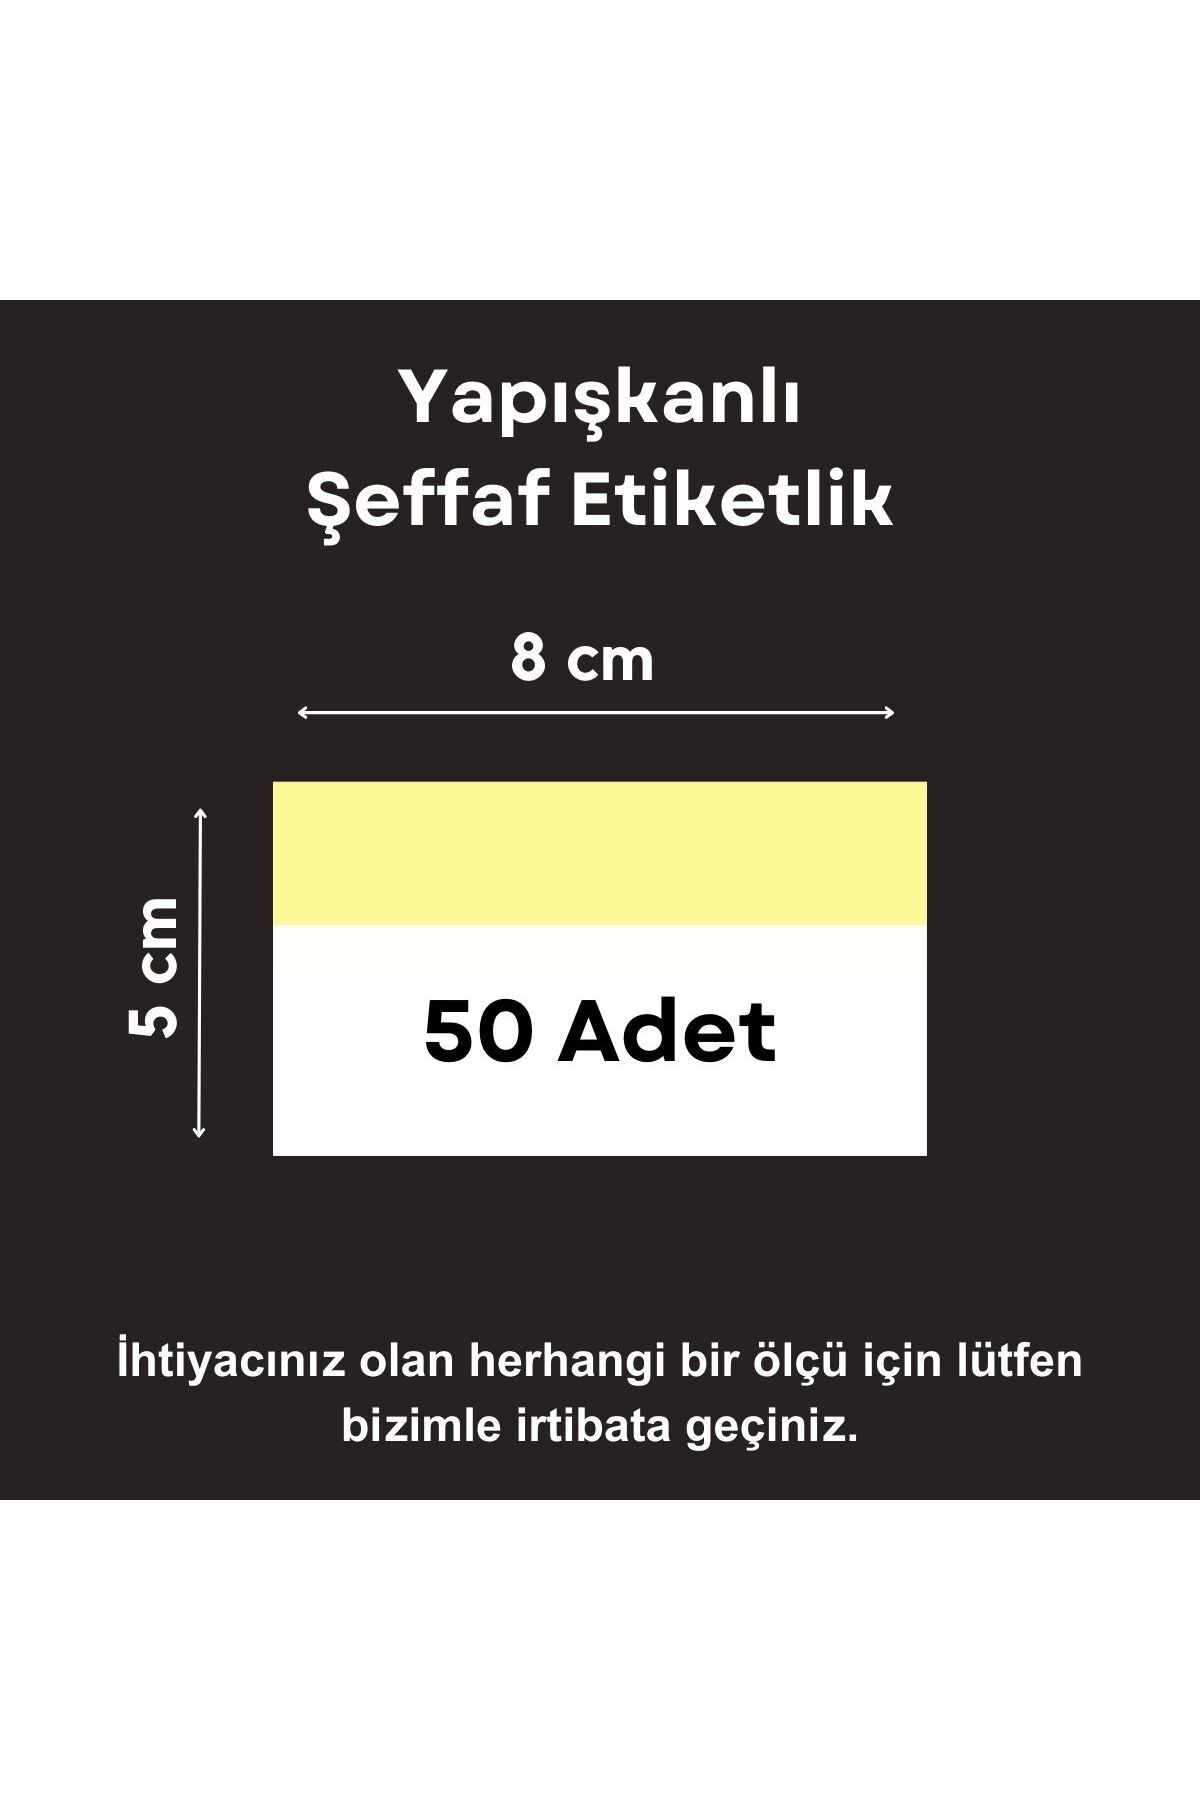 Şeffaf Etiket 50 ad PVC Etiketlik Yapışkanlı 8x5 cm Raf Etiket Cebi Yapışkanlı Şeffaf Ürün Etiketliği İsimlik